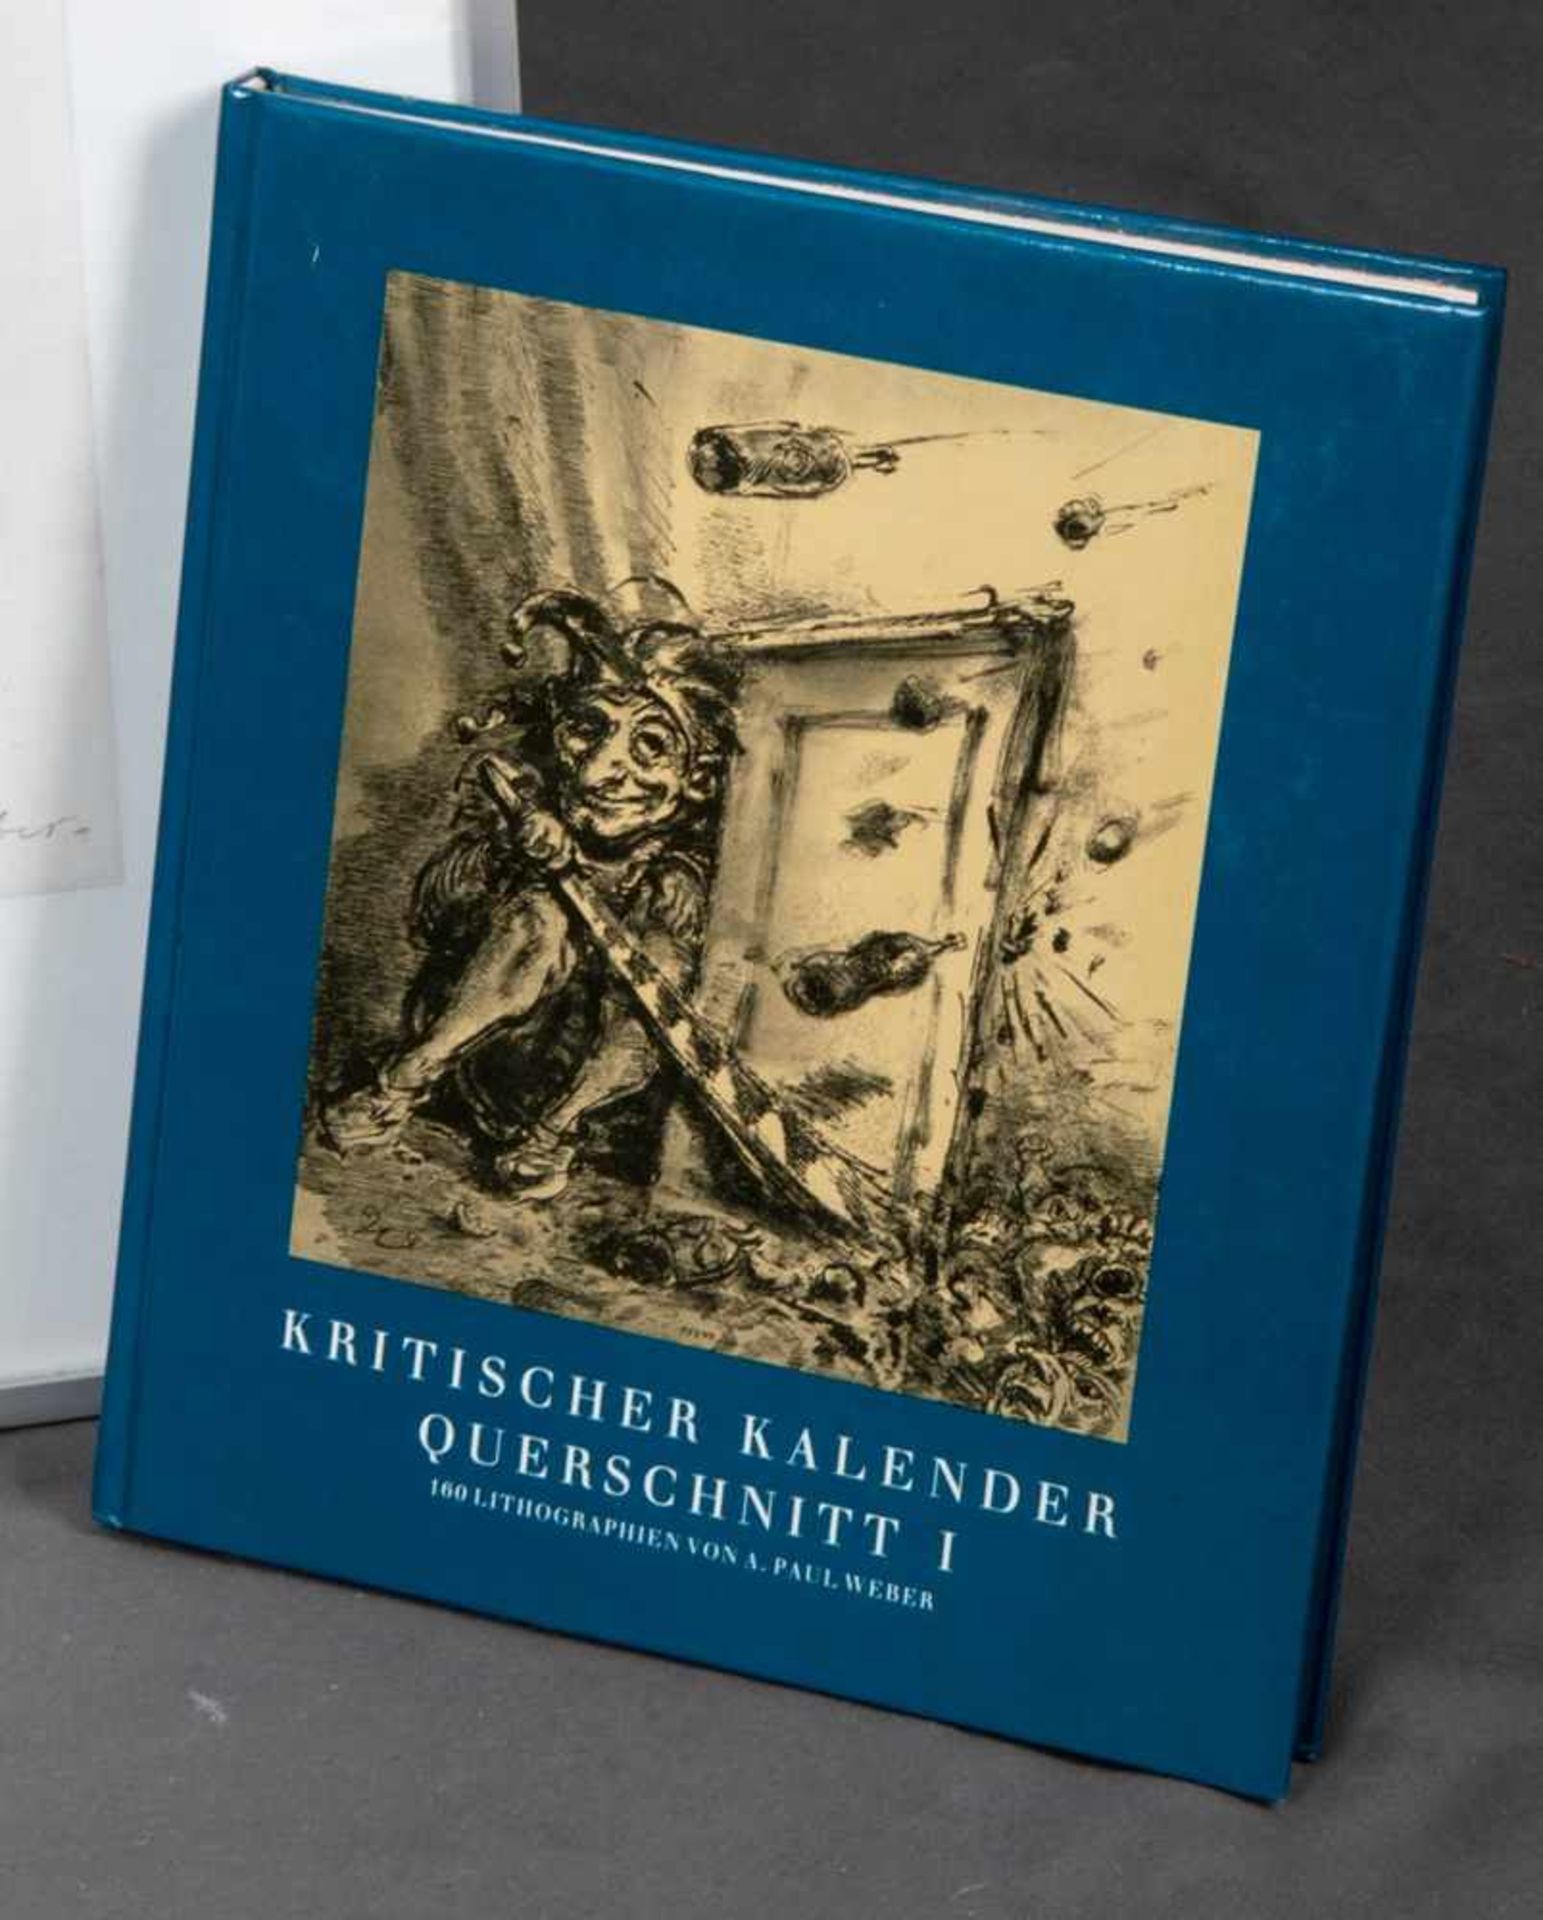 A. Paul Werber - "Kritischer Kalender" - Querschnitt 1. Hinter Glas gerahmte Druckgraphik (No. 22/ - Image 2 of 7